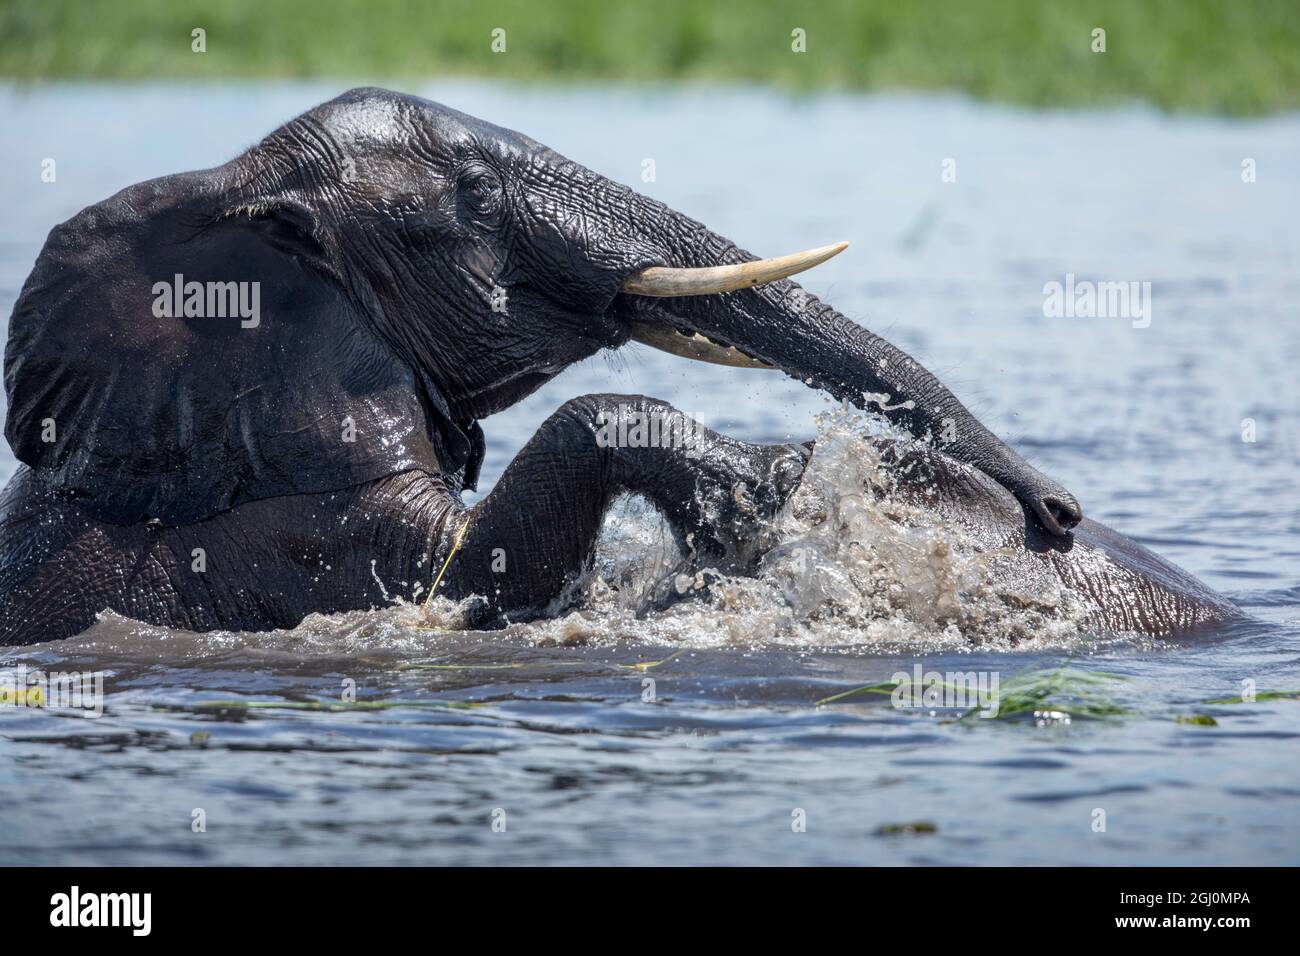 África, Botswana, el Parque Nacional Chobe, de elefantes (Loxodonta africana), jugar y spar mientras refrescarse en el río Chobe Foto de stock